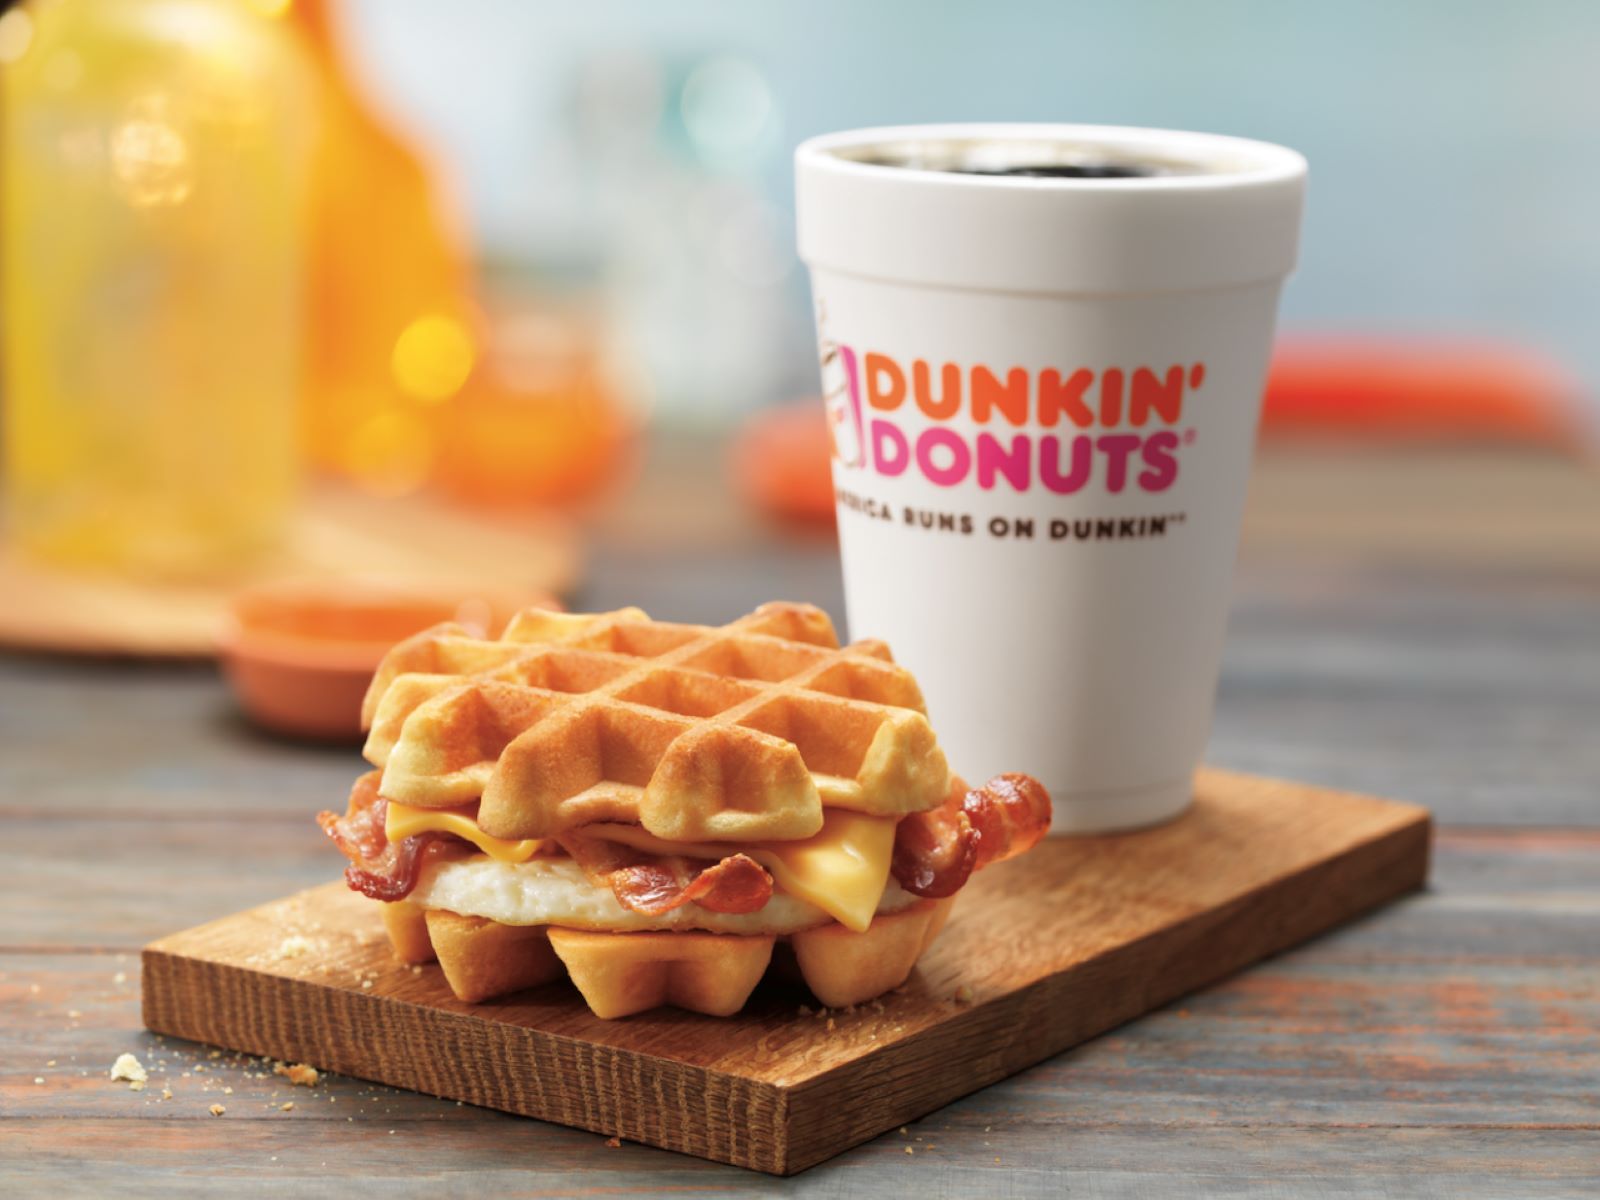 You Won't Believe When Dunkin' Donuts Serves Breakfast!